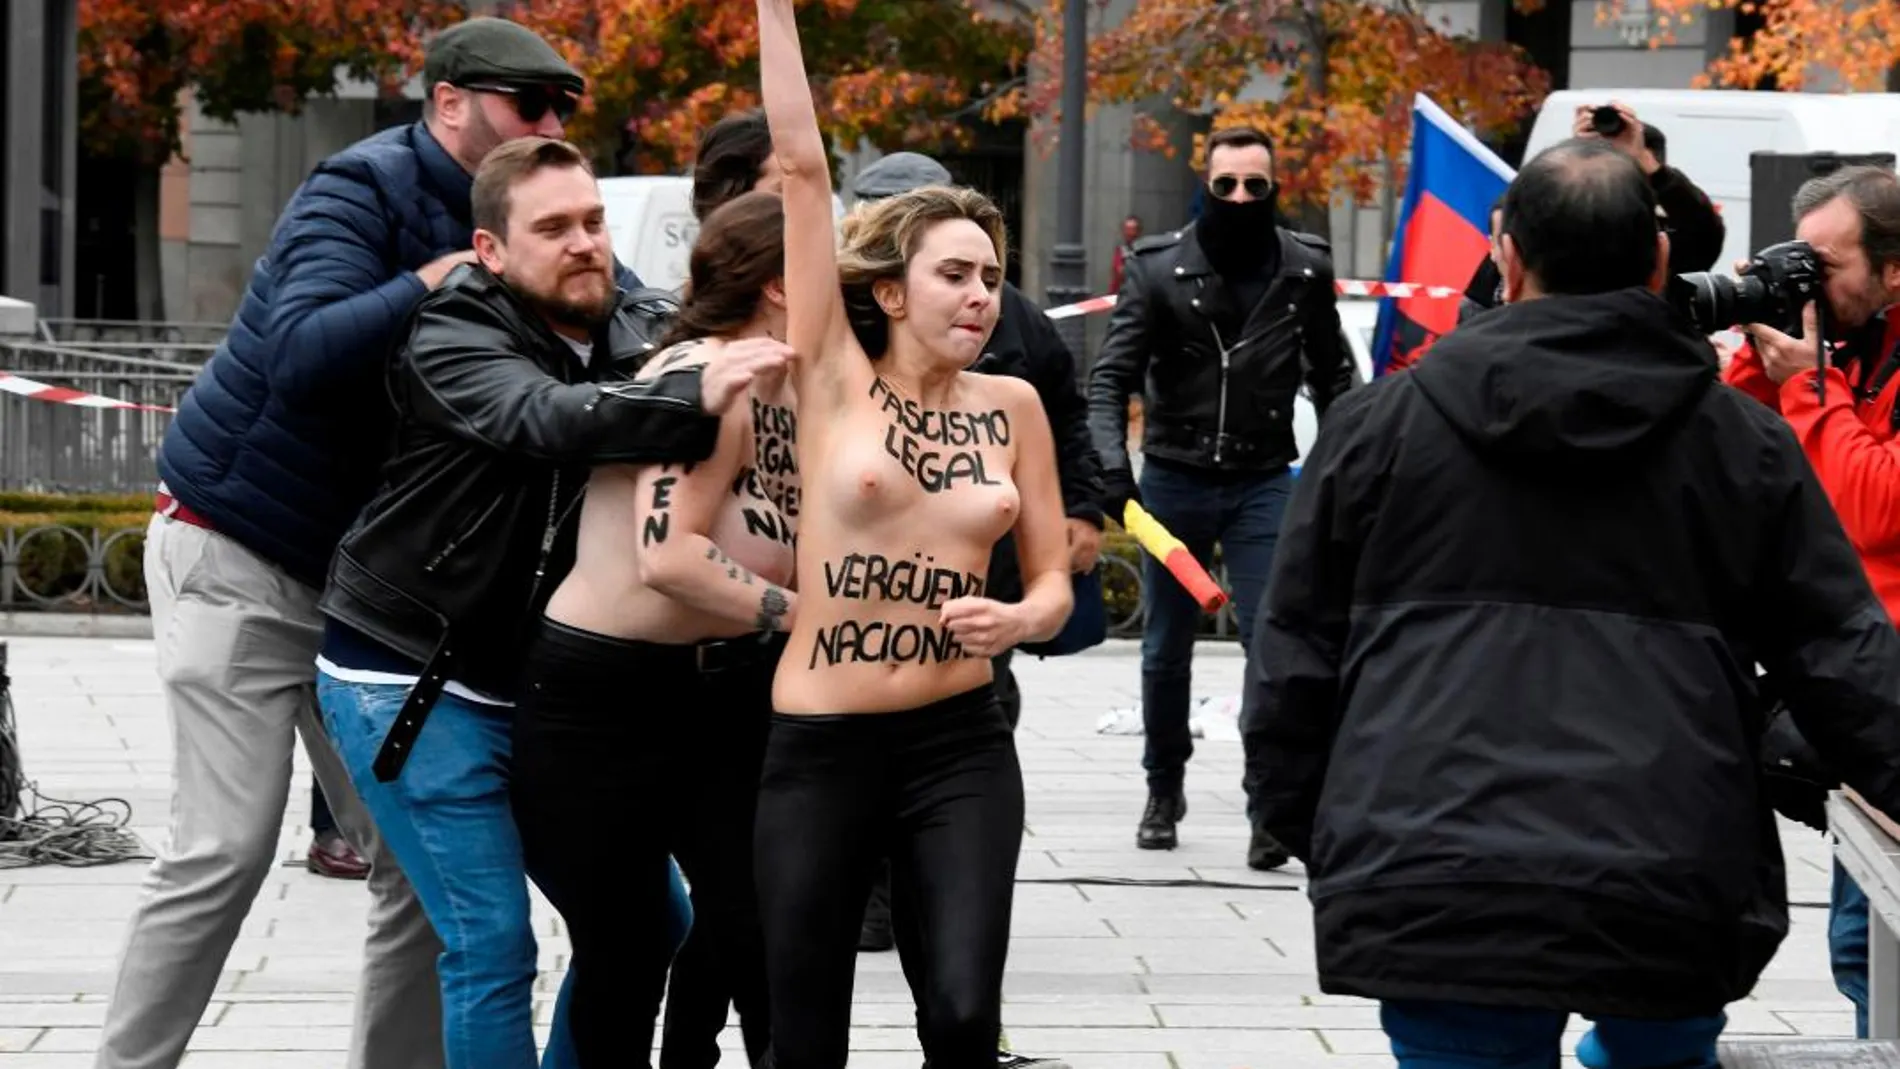 Las participantes de la protesta llevaban escrito sobre la piel del pecho el lema "fascismo legal, vergüenza nacional / Fotos: Efe